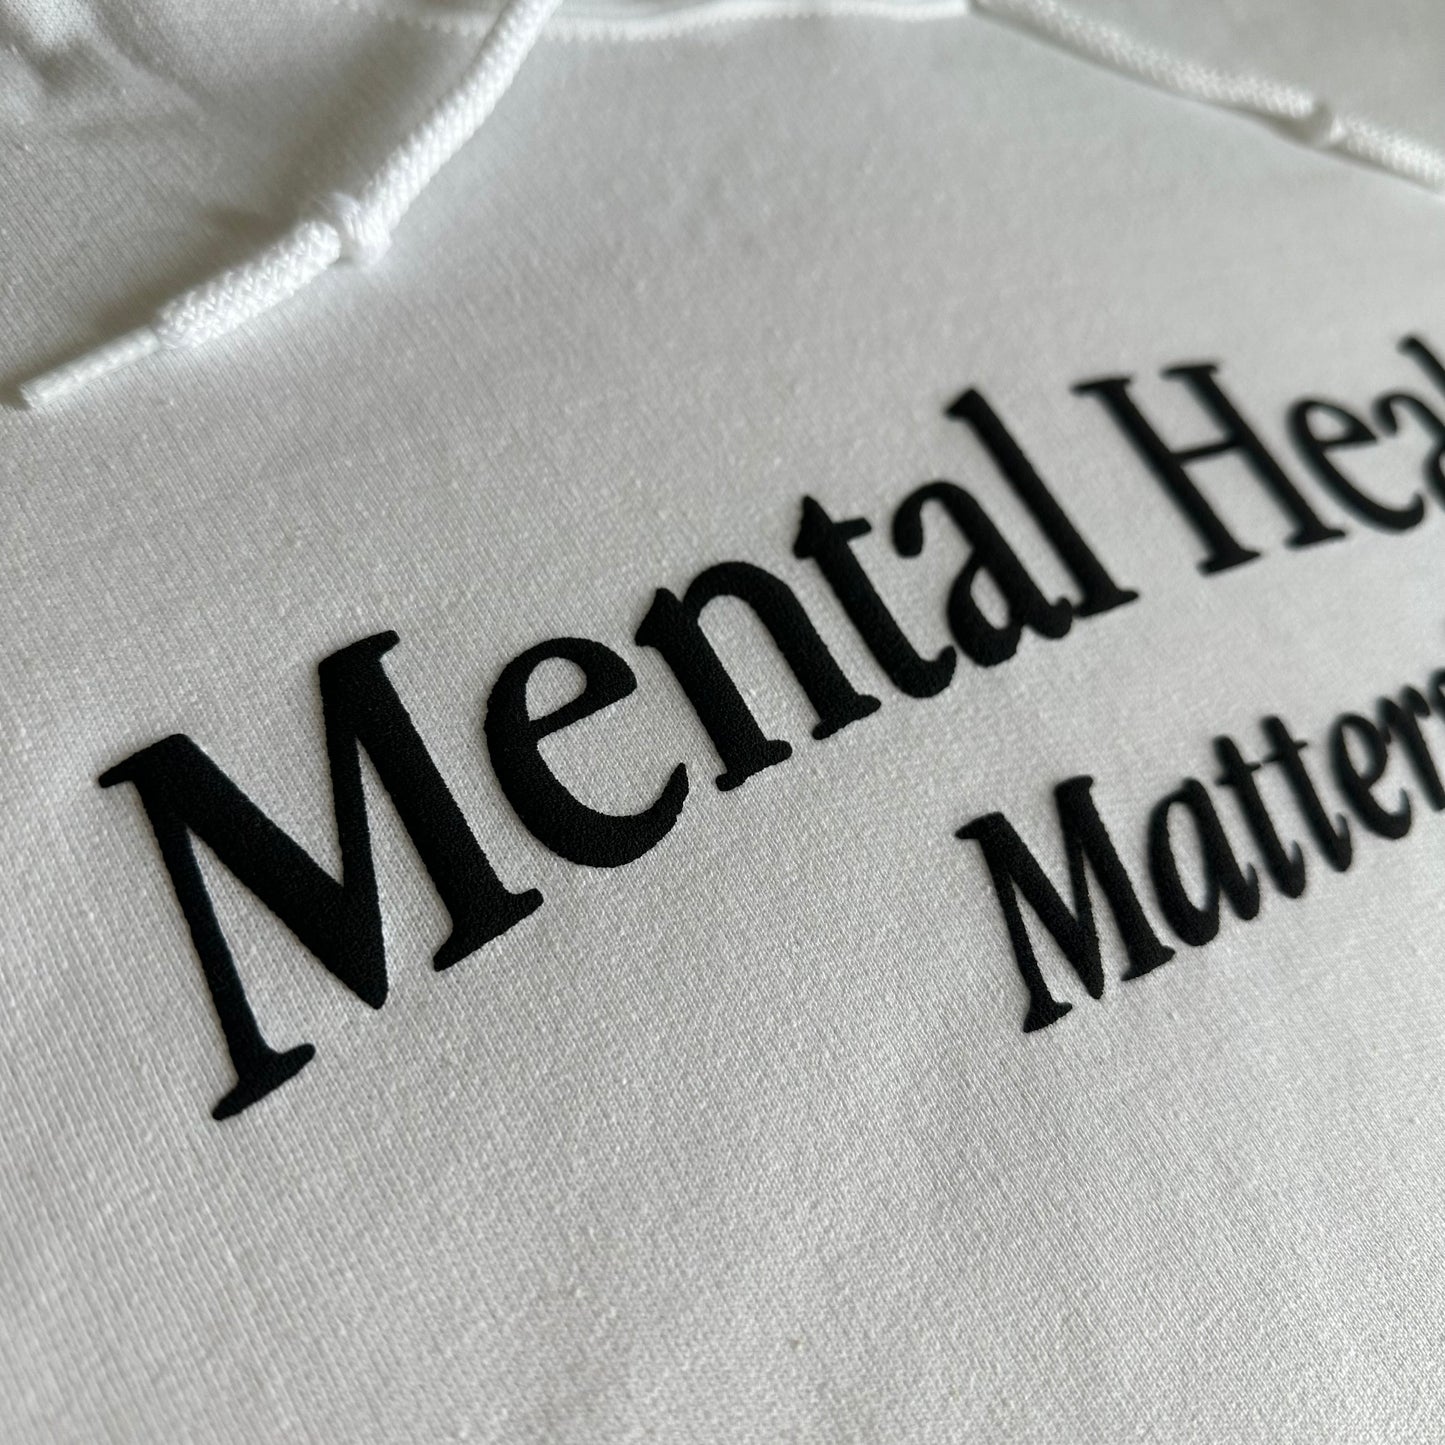 Mental Health Matters Hoodie